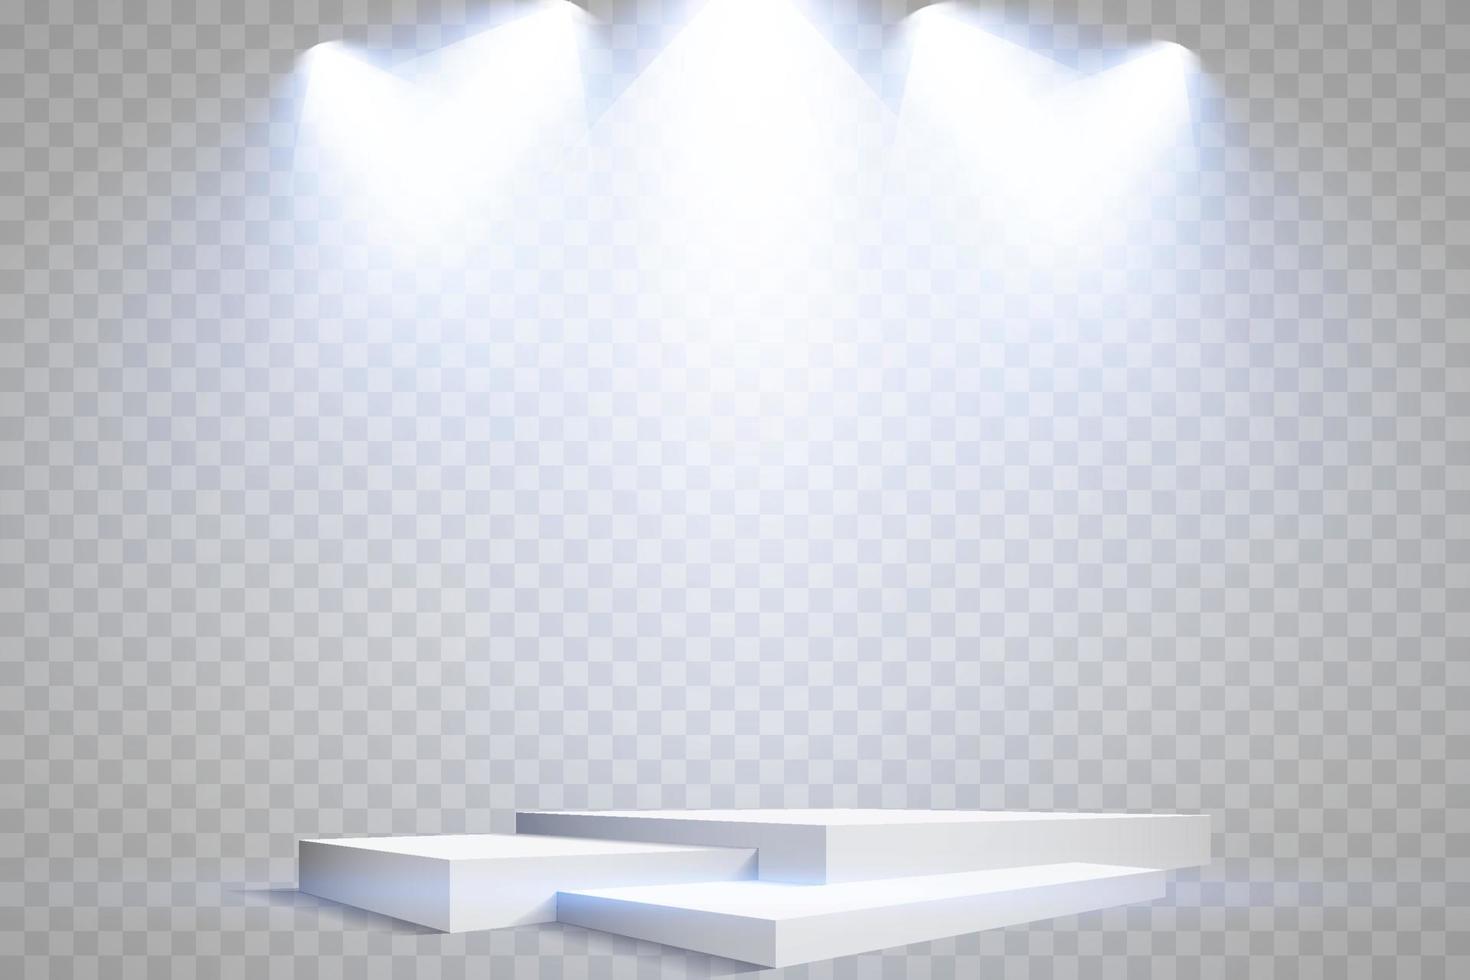 podium stå isolerat på transparent bakgrund. vit rektangel plint, pelare eller visa skede. vektor tömma pris- piedestal med blå projektor ljus strålar.